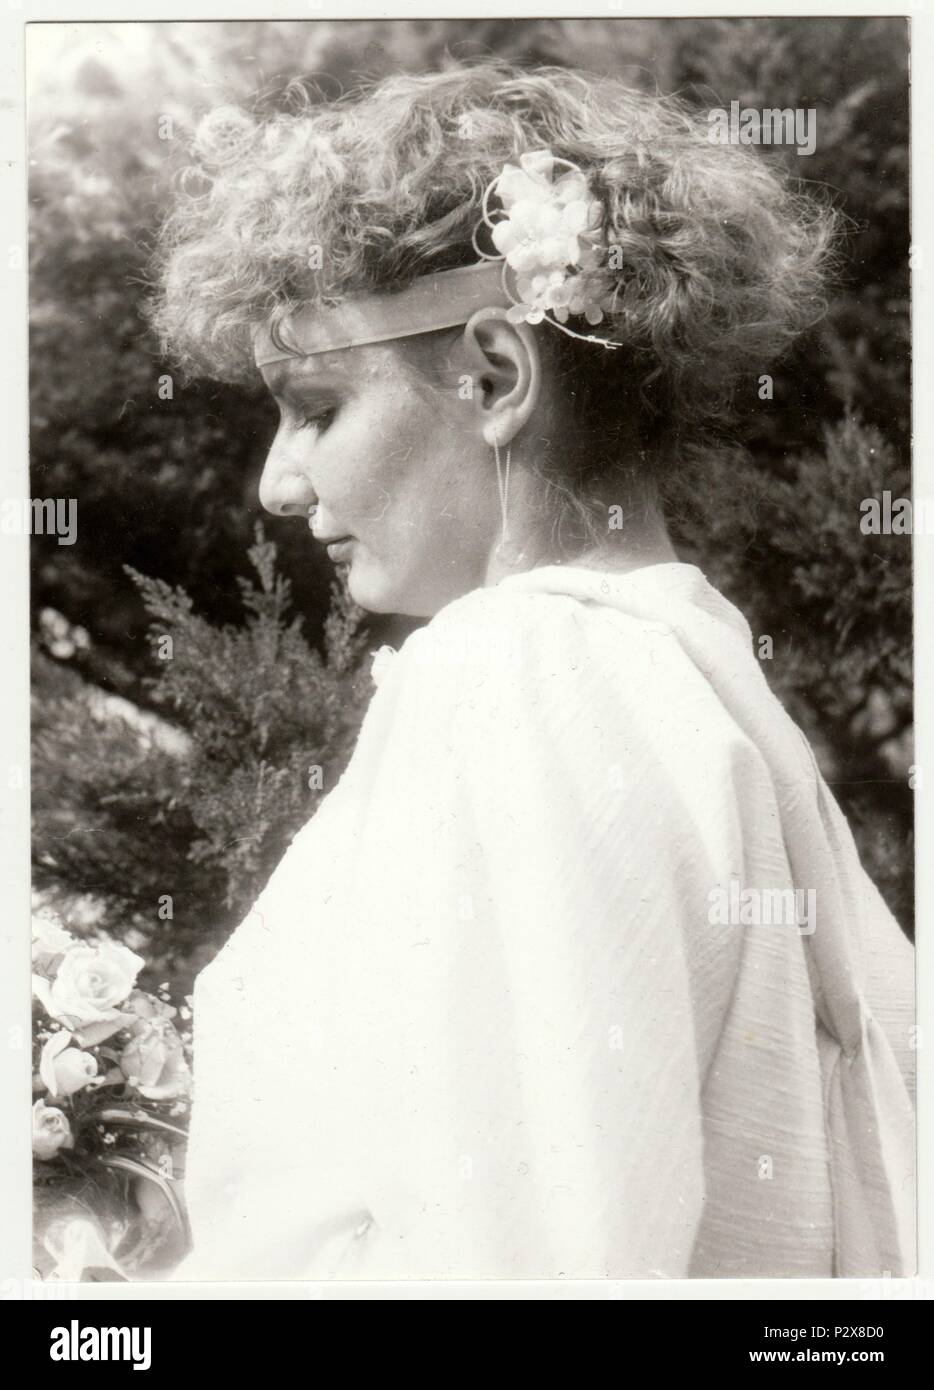 La République socialiste tchécoslovaque - circa 1980 : Vintage photo montre jeune femme avec des fleurs dans les cheveux. Retro noir et blanc de la photographie. Banque D'Images